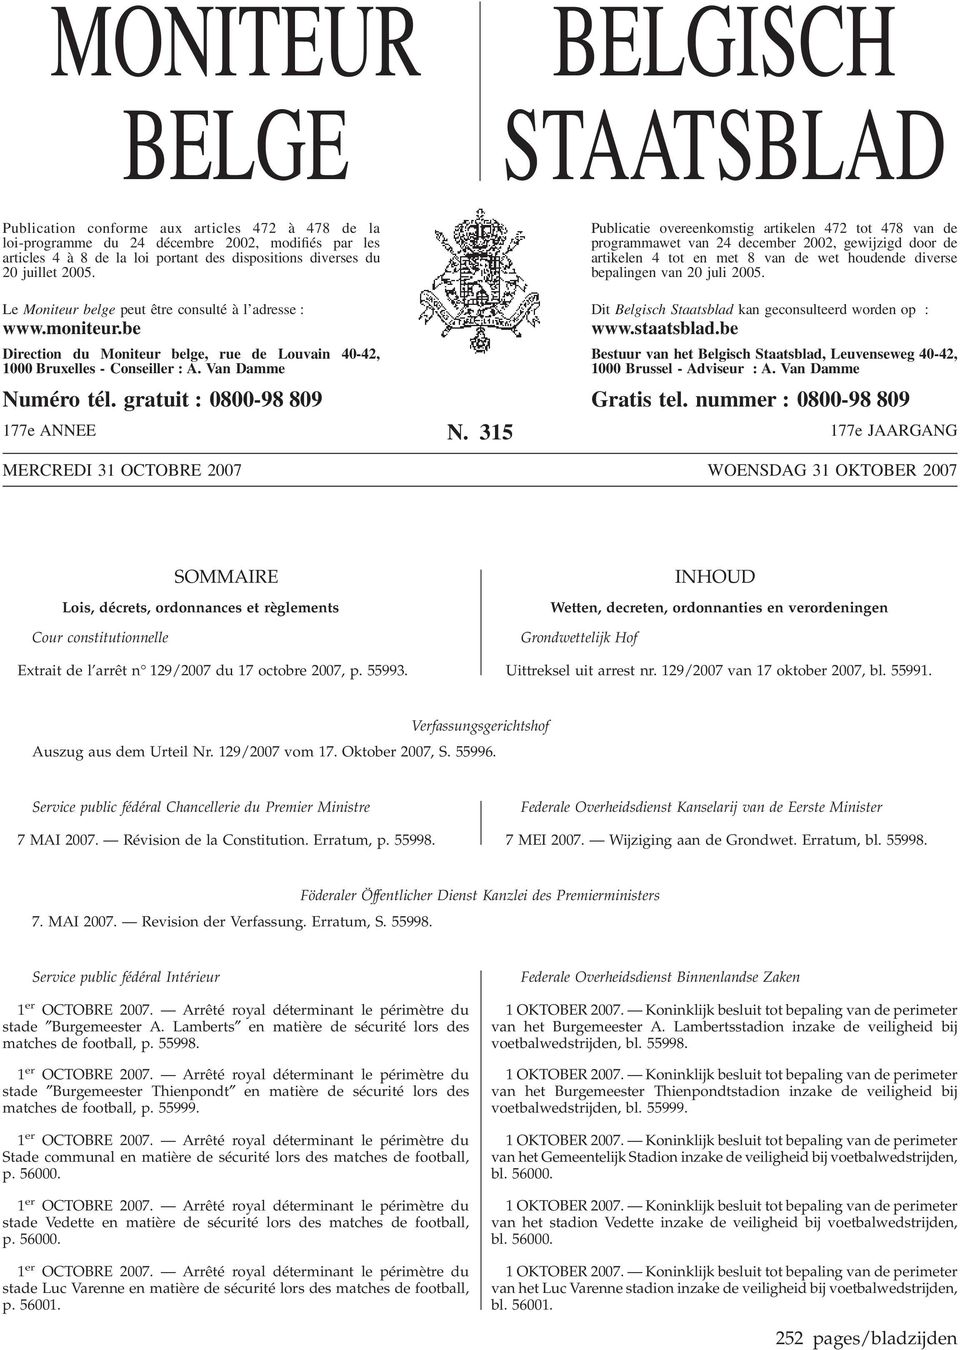 Publicatie overeenkomstig artikelen 472 tot 478 van de programmawet van 24 december 2002, gewijzigd door de artikelen 4 tot en met 8 van de wet houdende diverse bepalingen van 20 juli 2005.